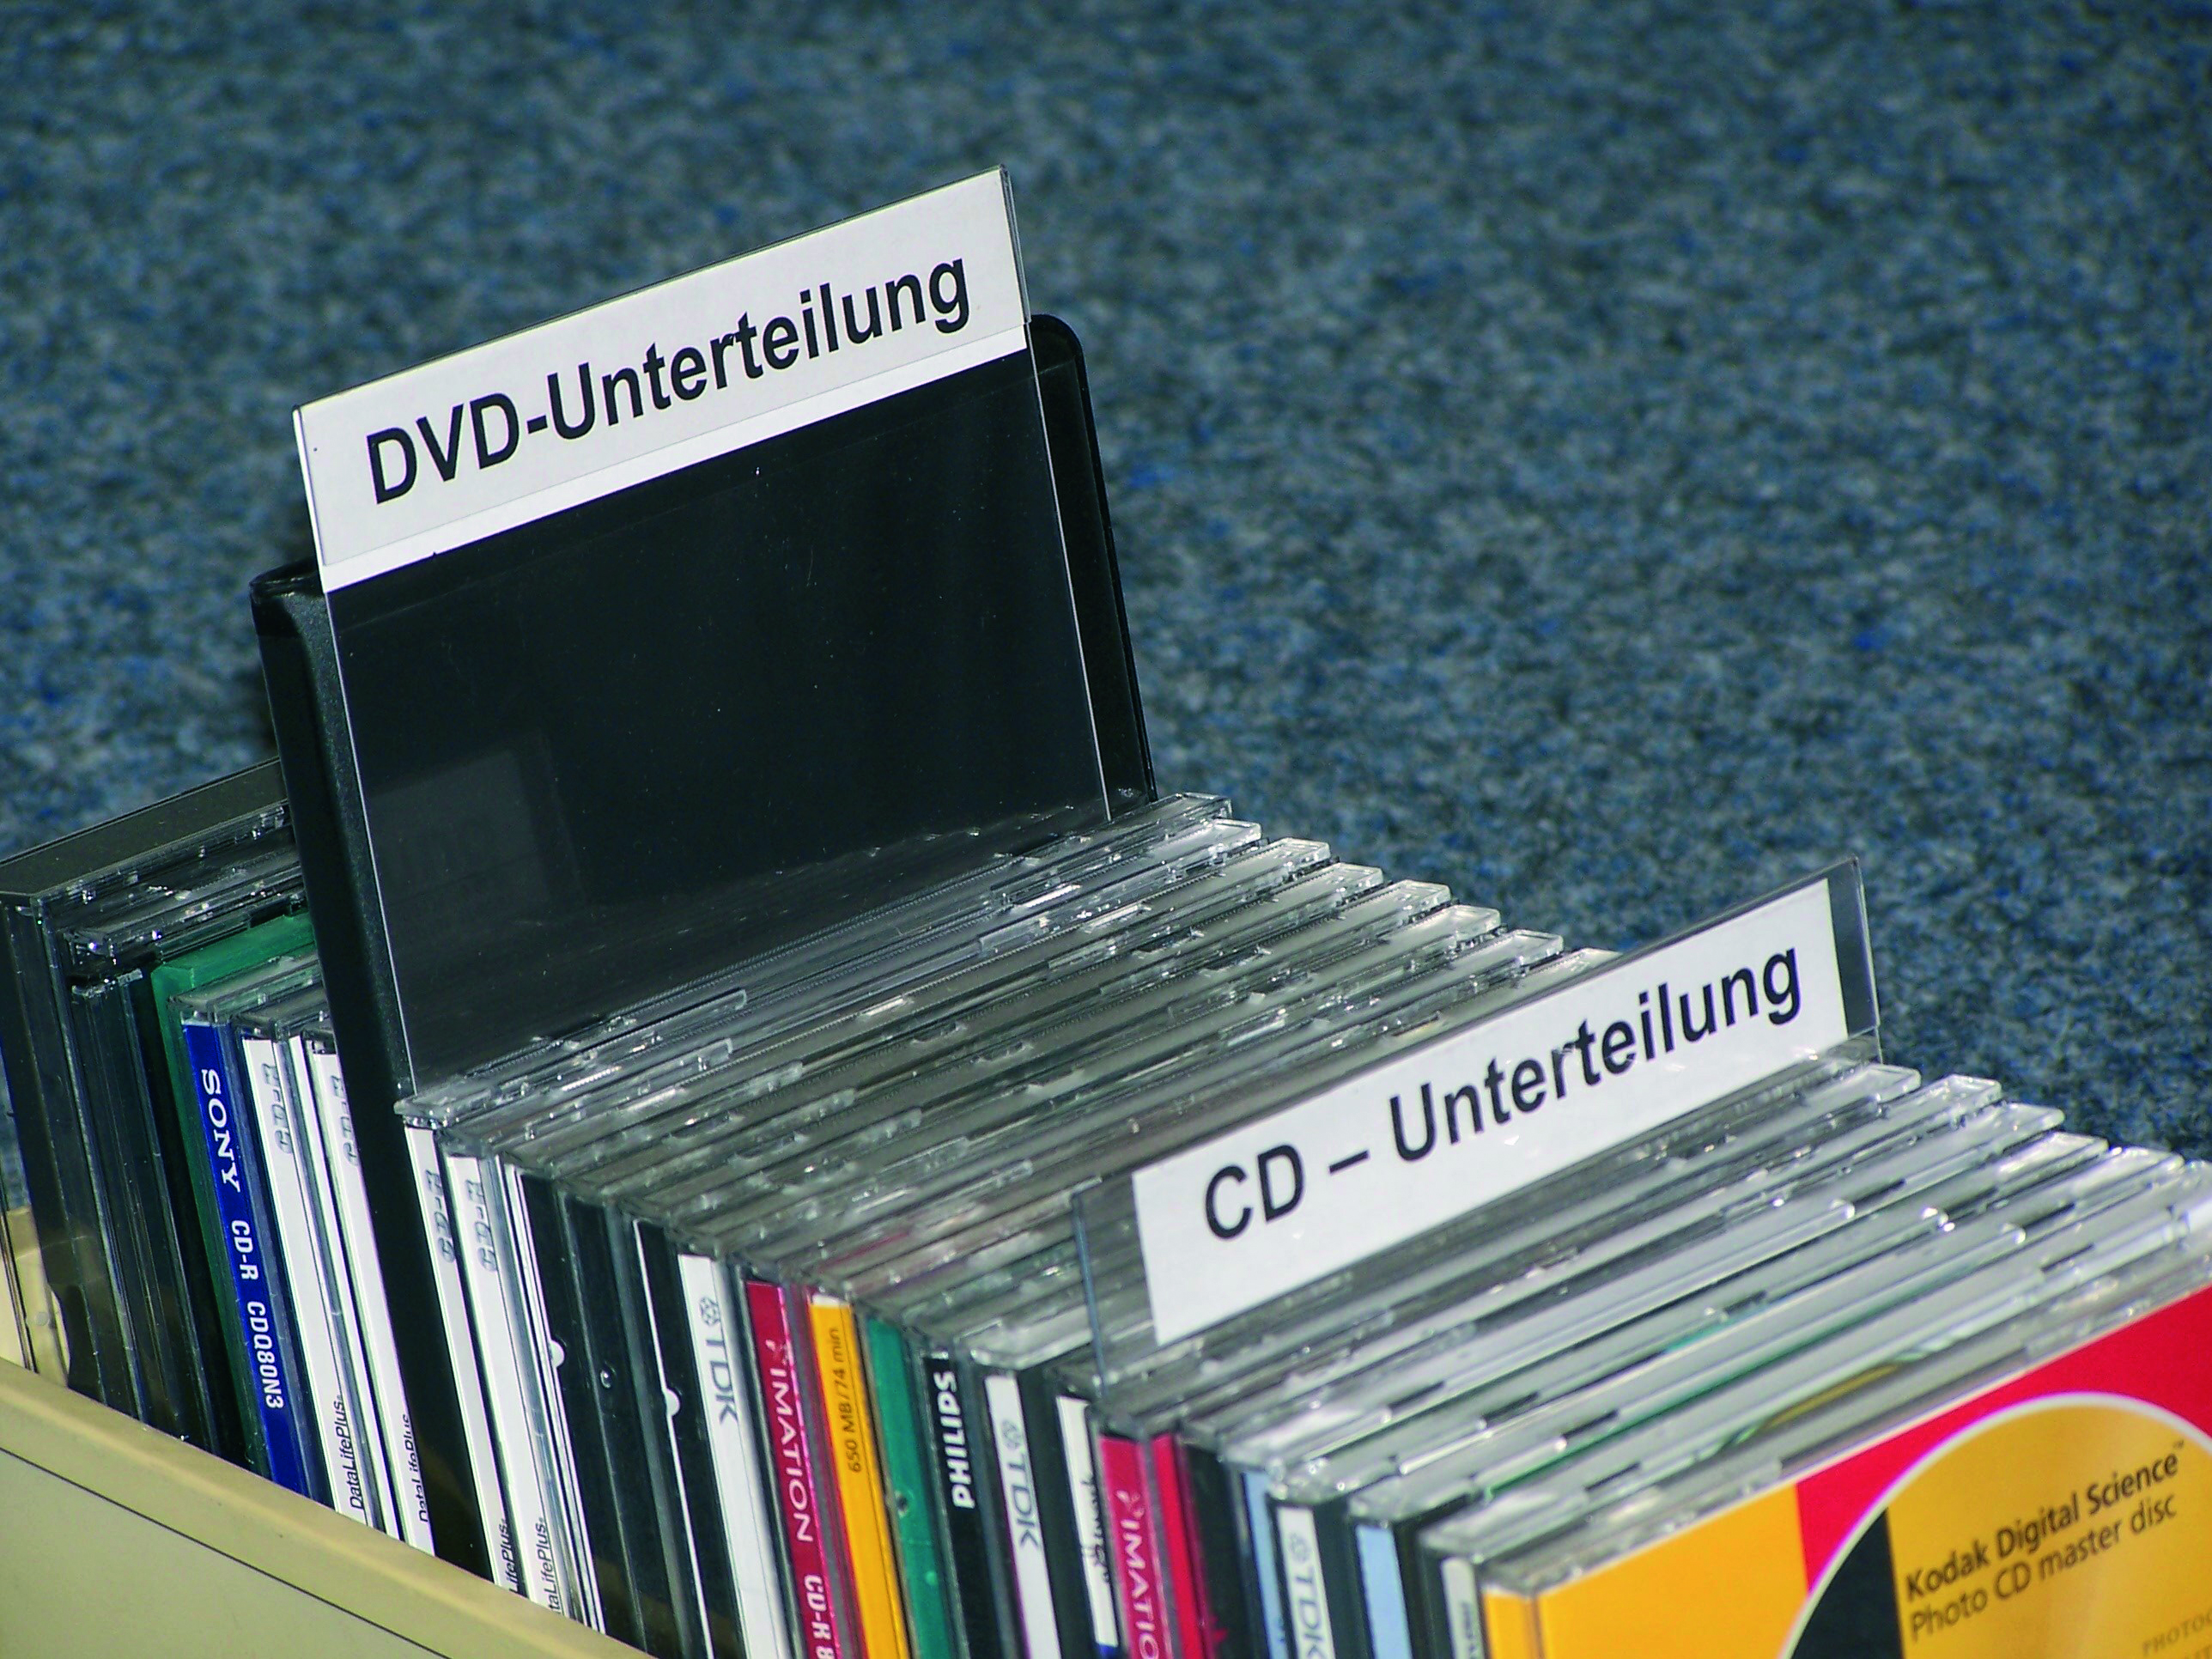 CD- DVD- Unterteilung